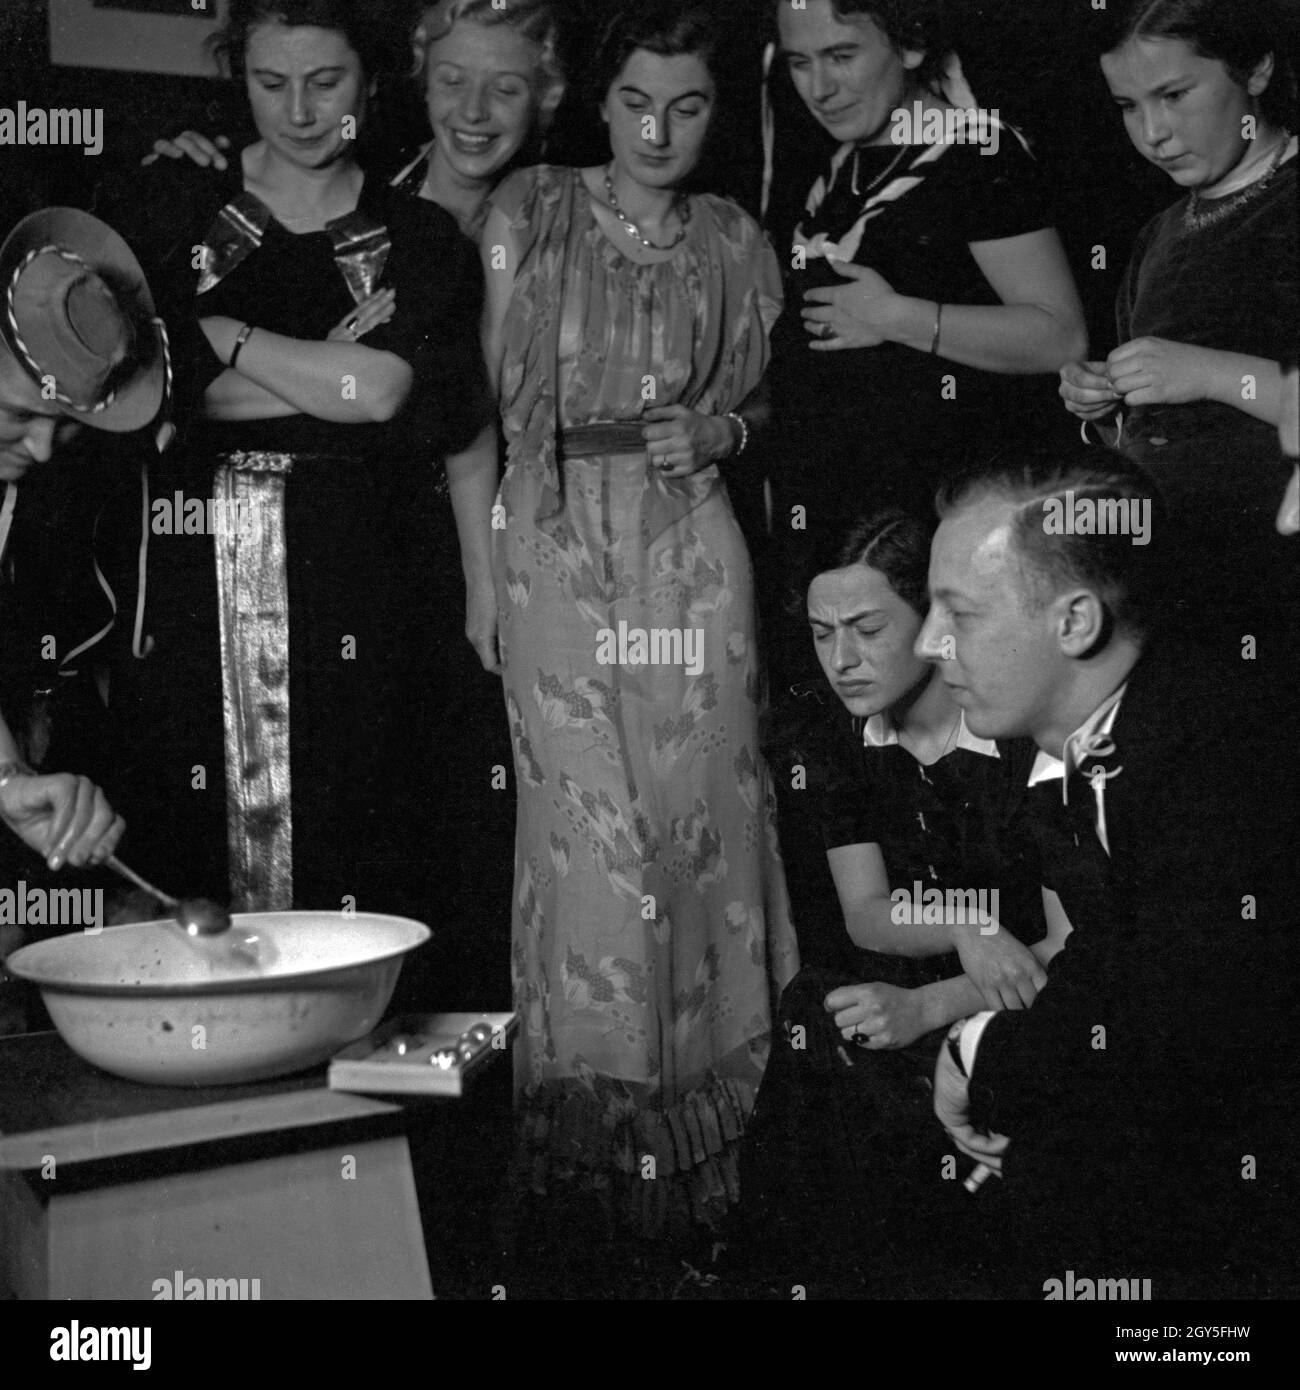 Fertigmachen zum Bleigießen auf einer Silvesterparty, Deutschland 1930er Jahre. Get ready for lead pouring at a new year's eve party, Germany 1930s. Stock Photo